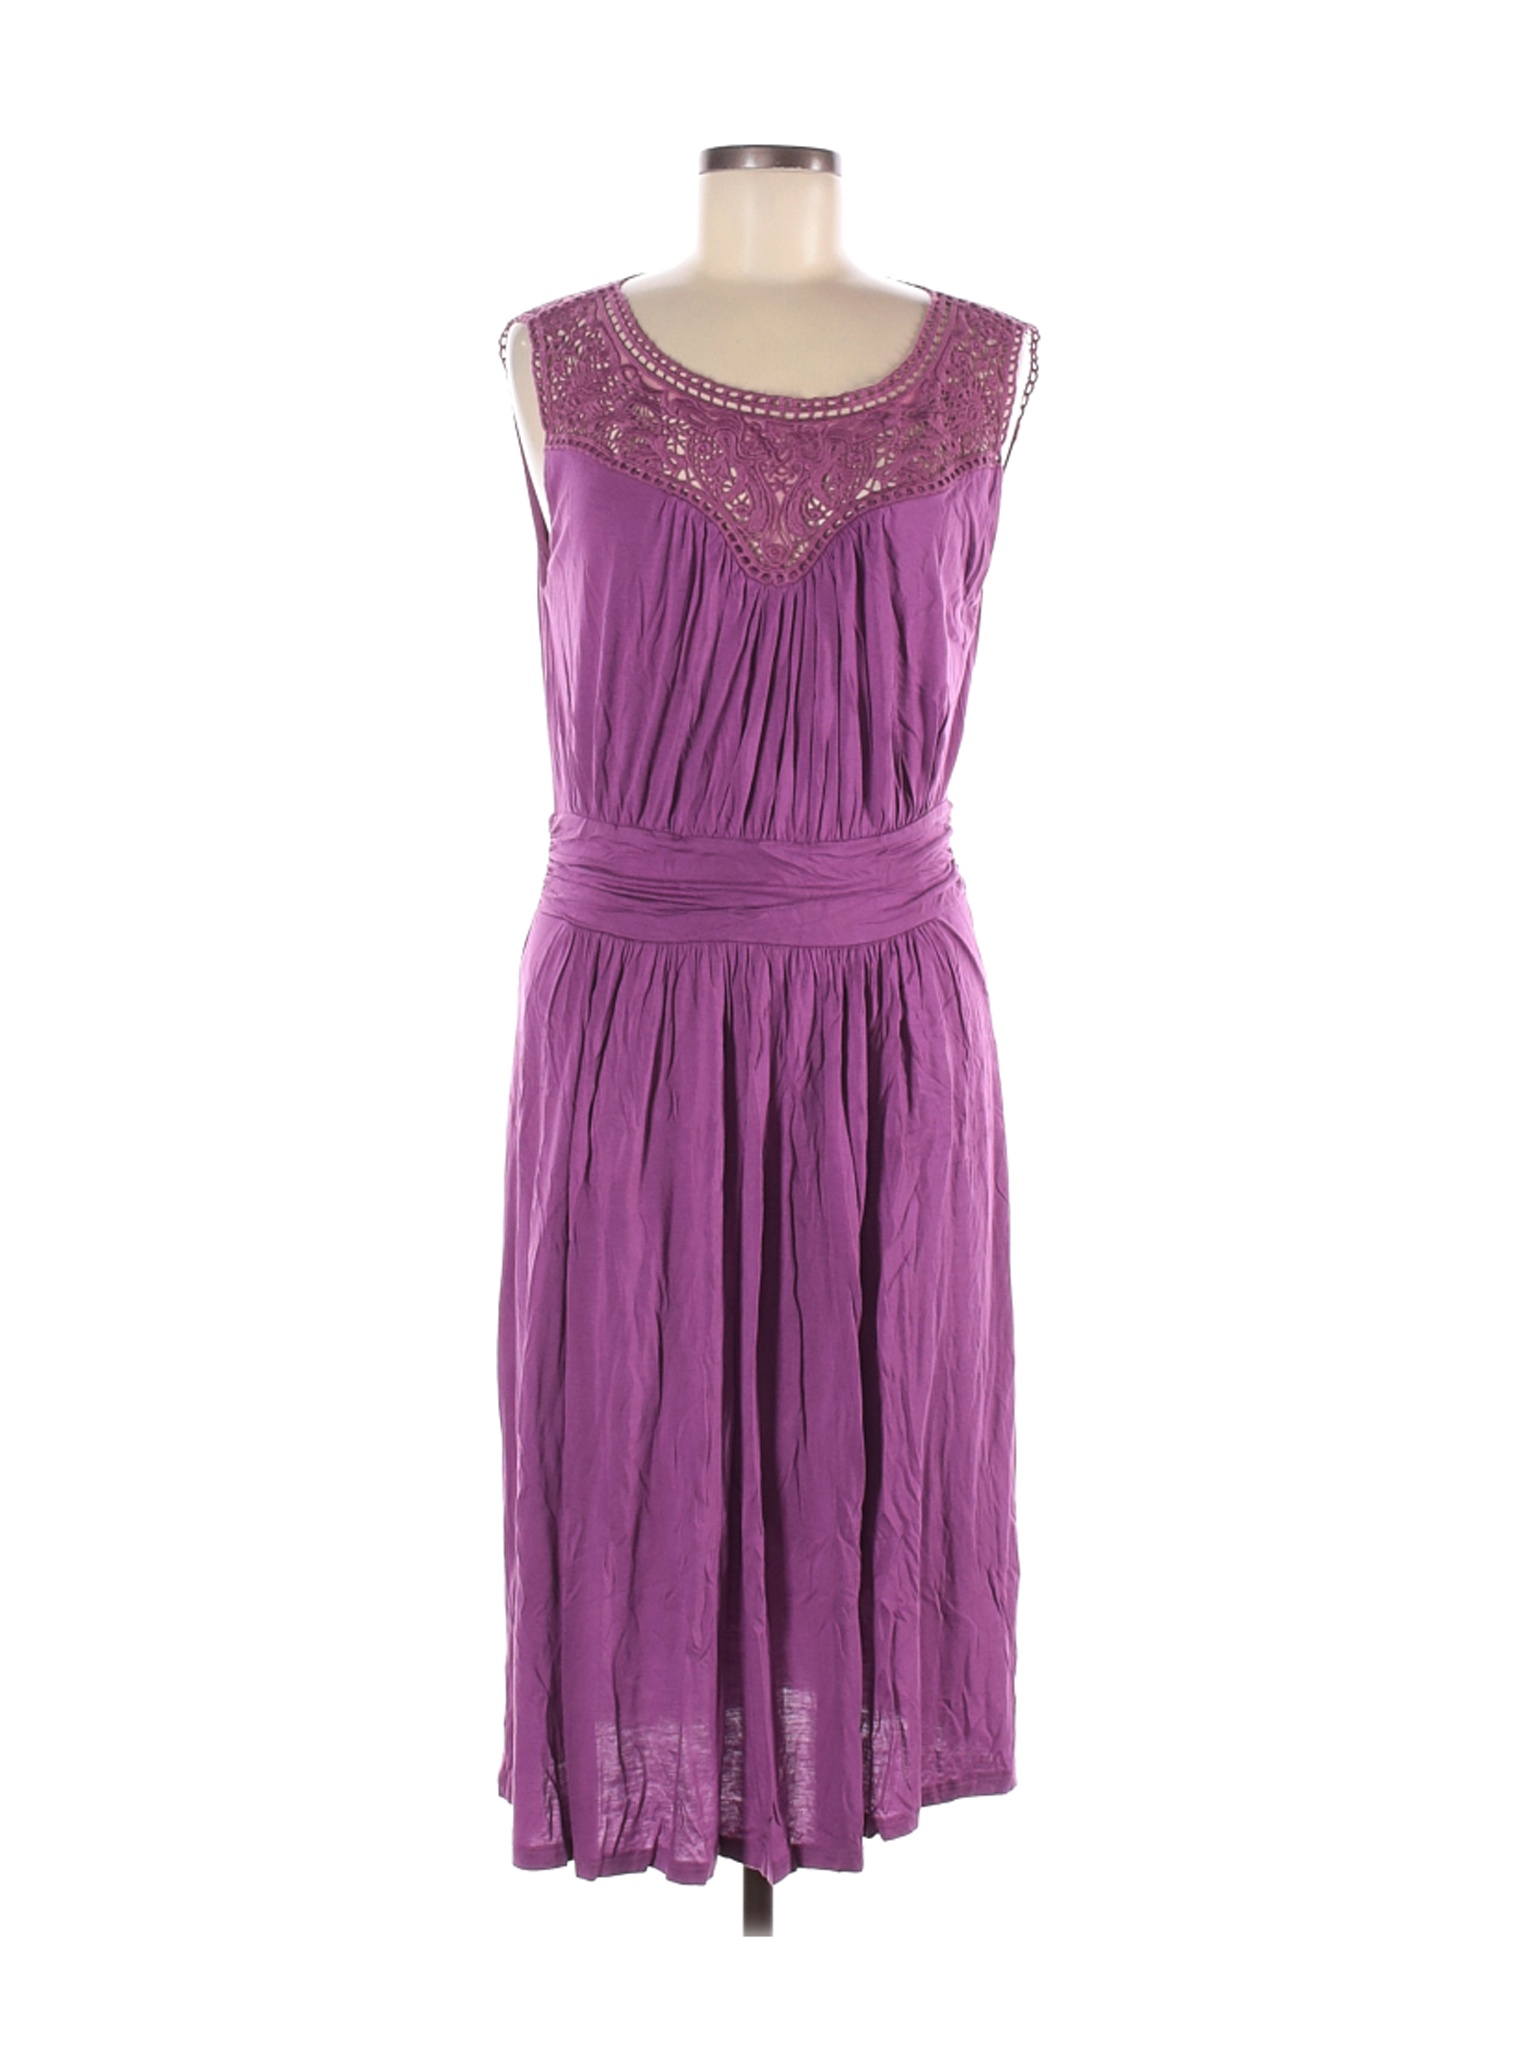 Boden Women Purple Casual Dress 10 | eBay